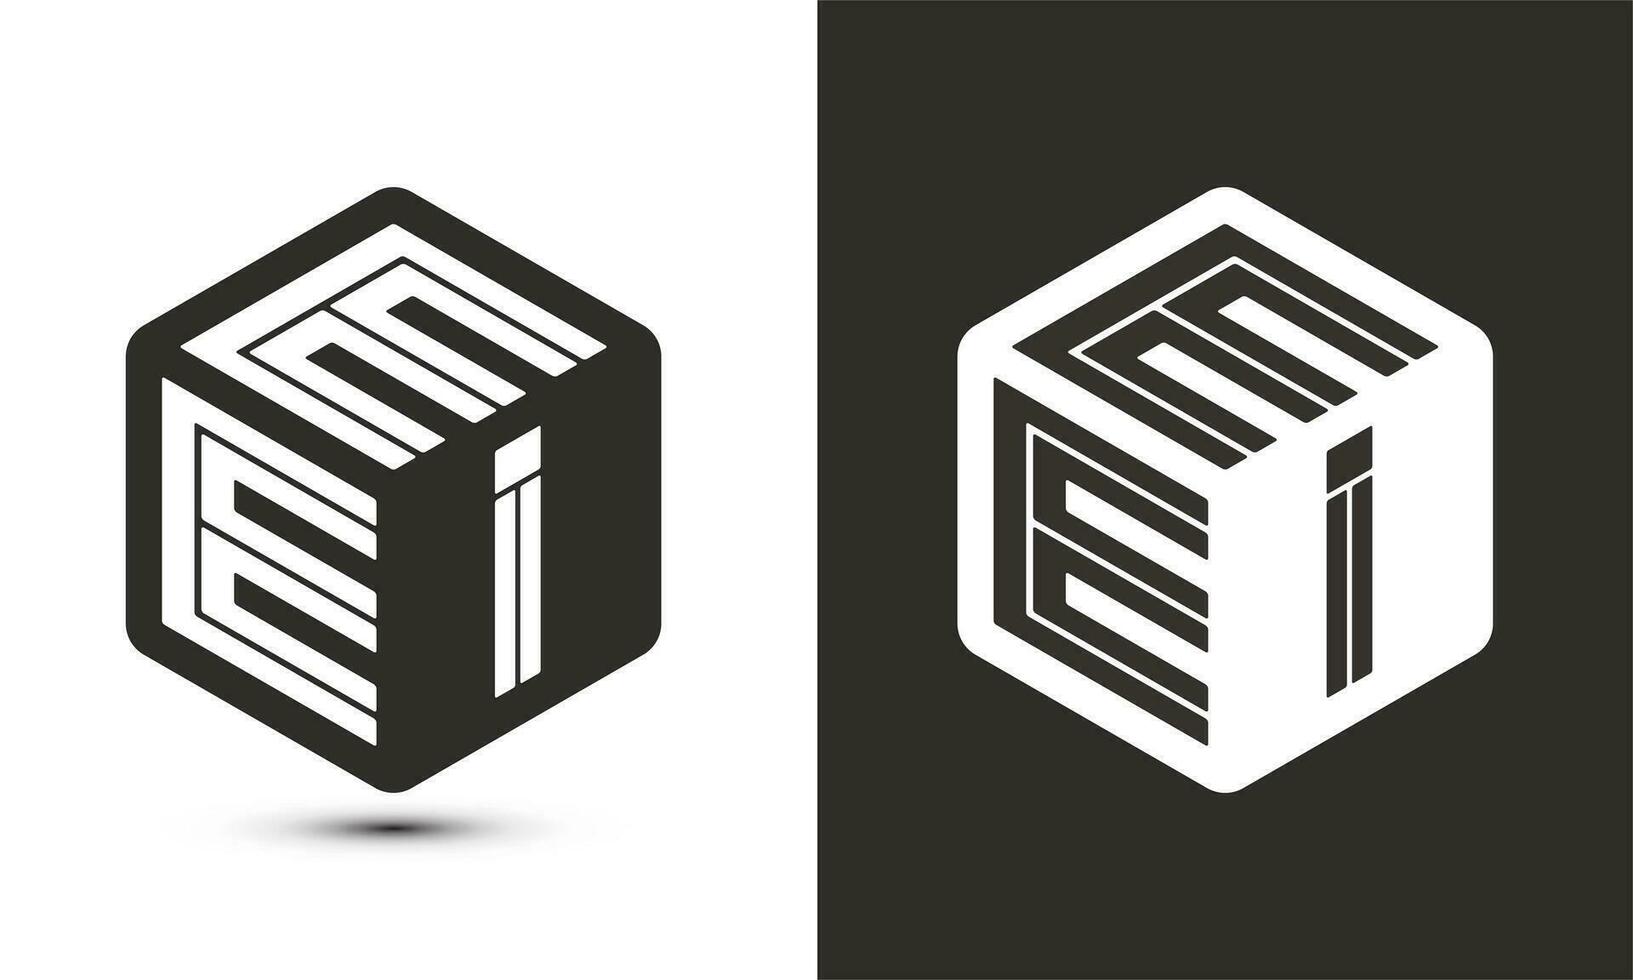 eei brief logo ontwerp met illustrator kubus logo, vector logo modern alfabet doopvont overlappen stijl.